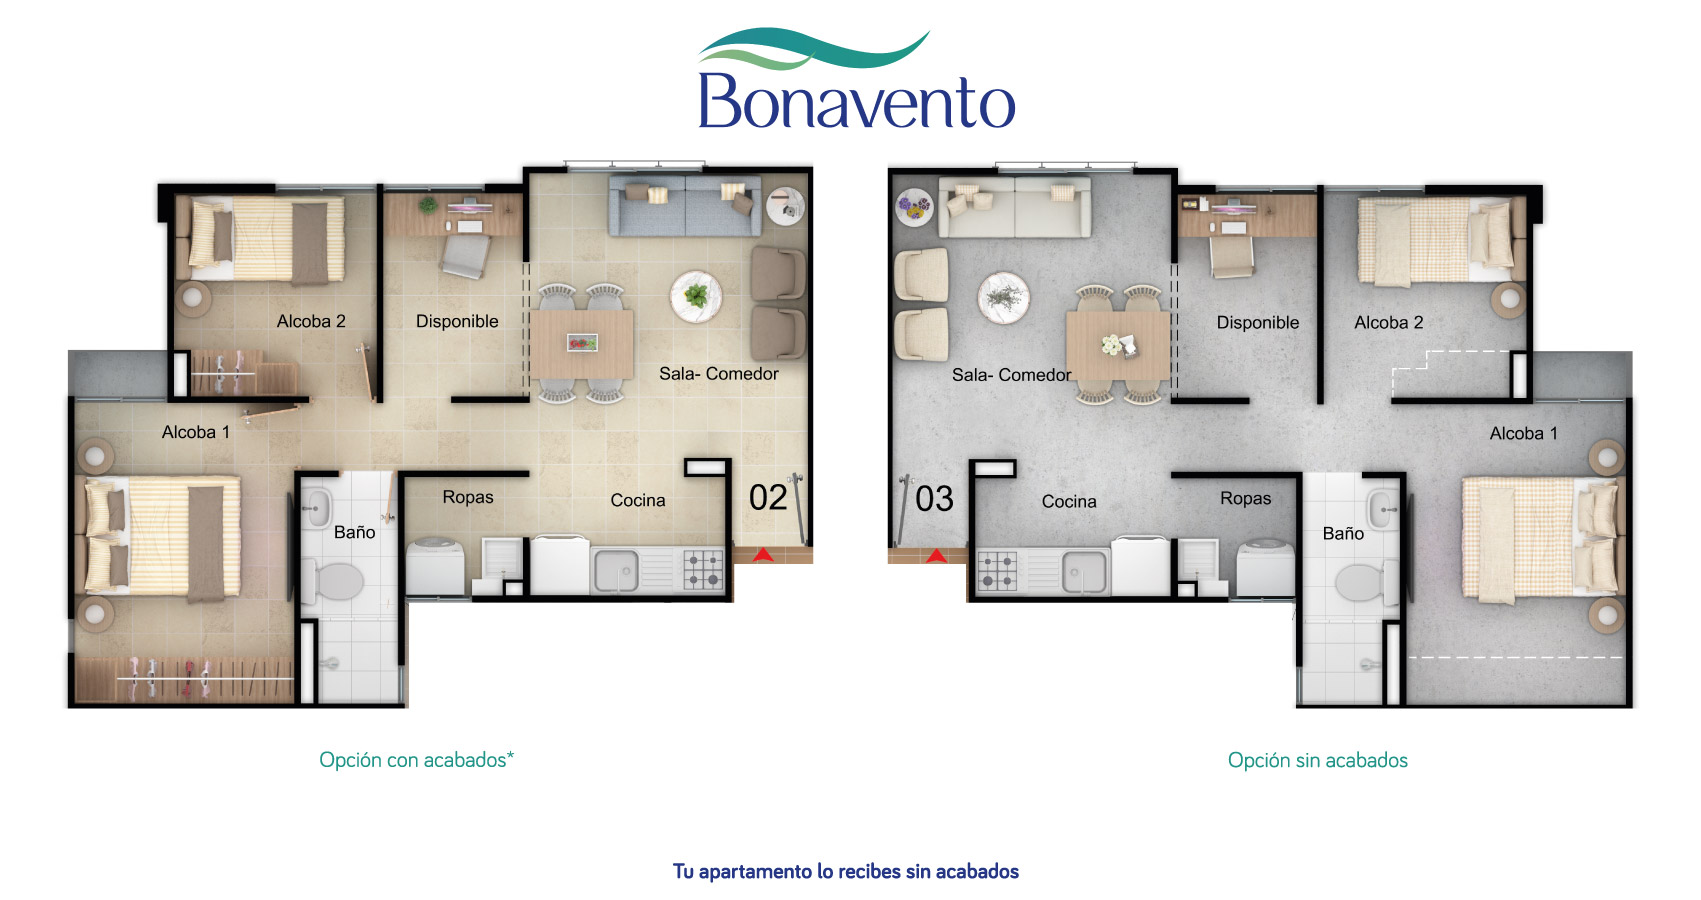 Bonavento apartamento tipo 46 constructora bolivar 